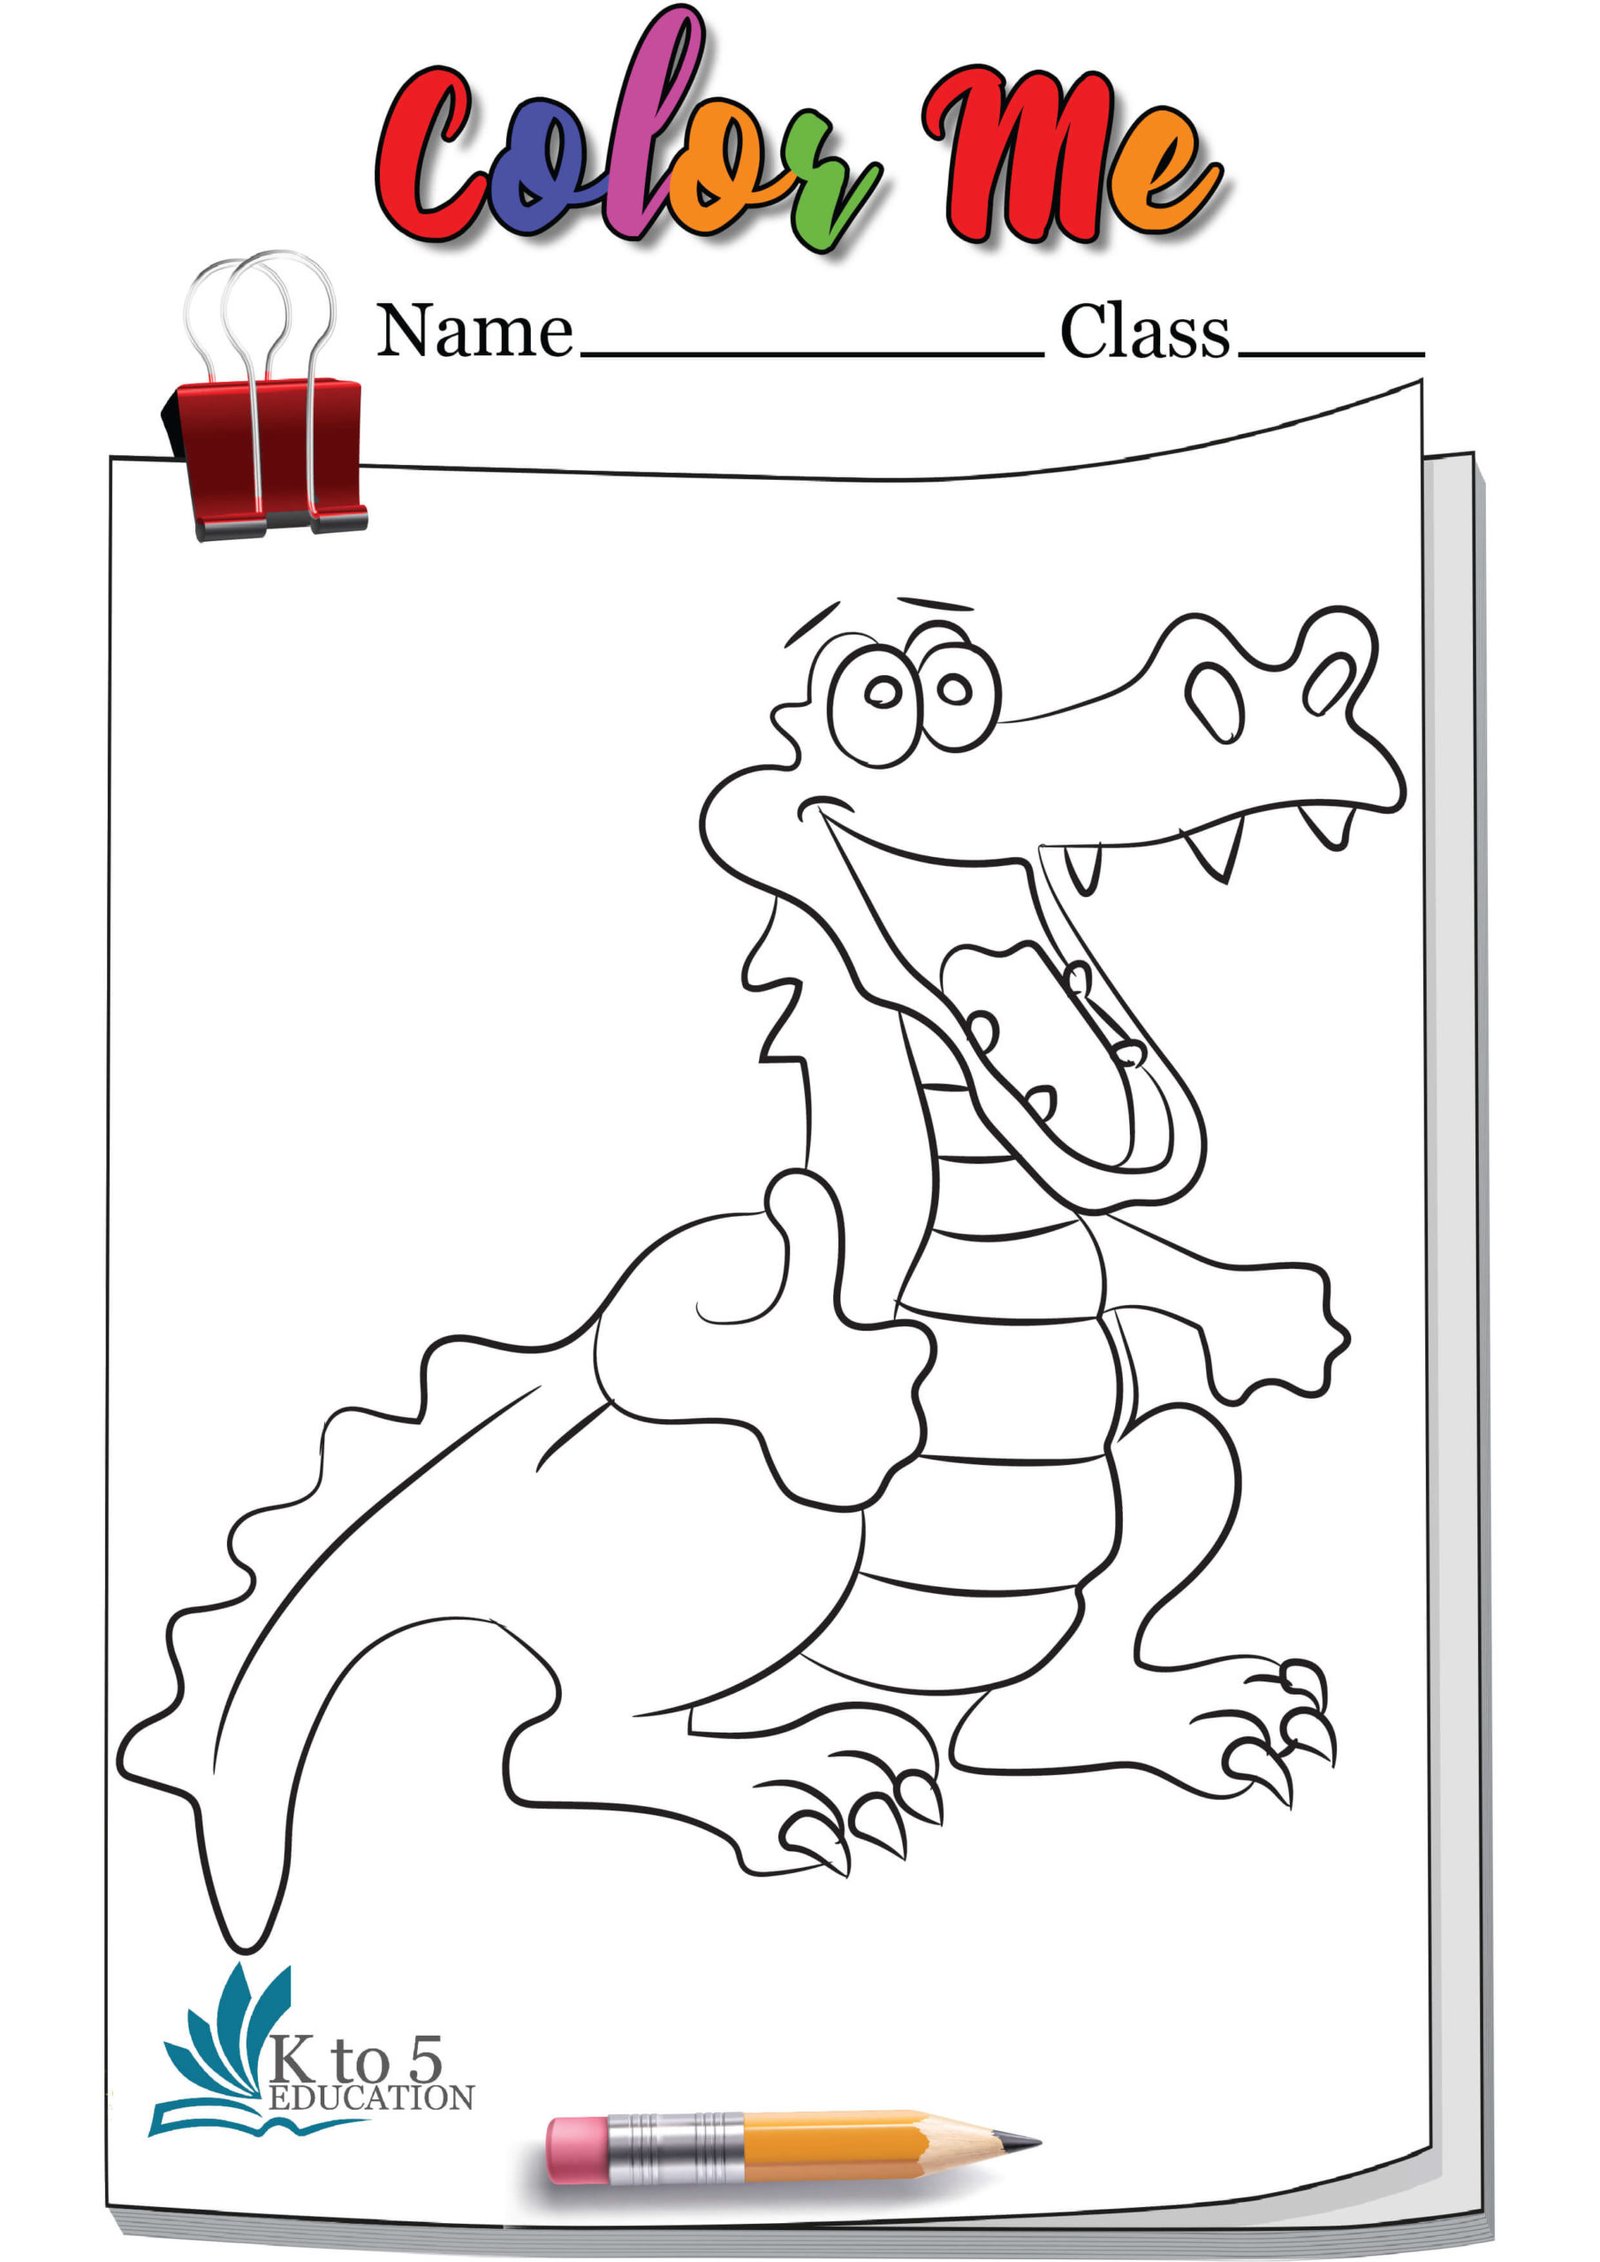 Crocodile Weaving Thumbsup Coloring page worksheet